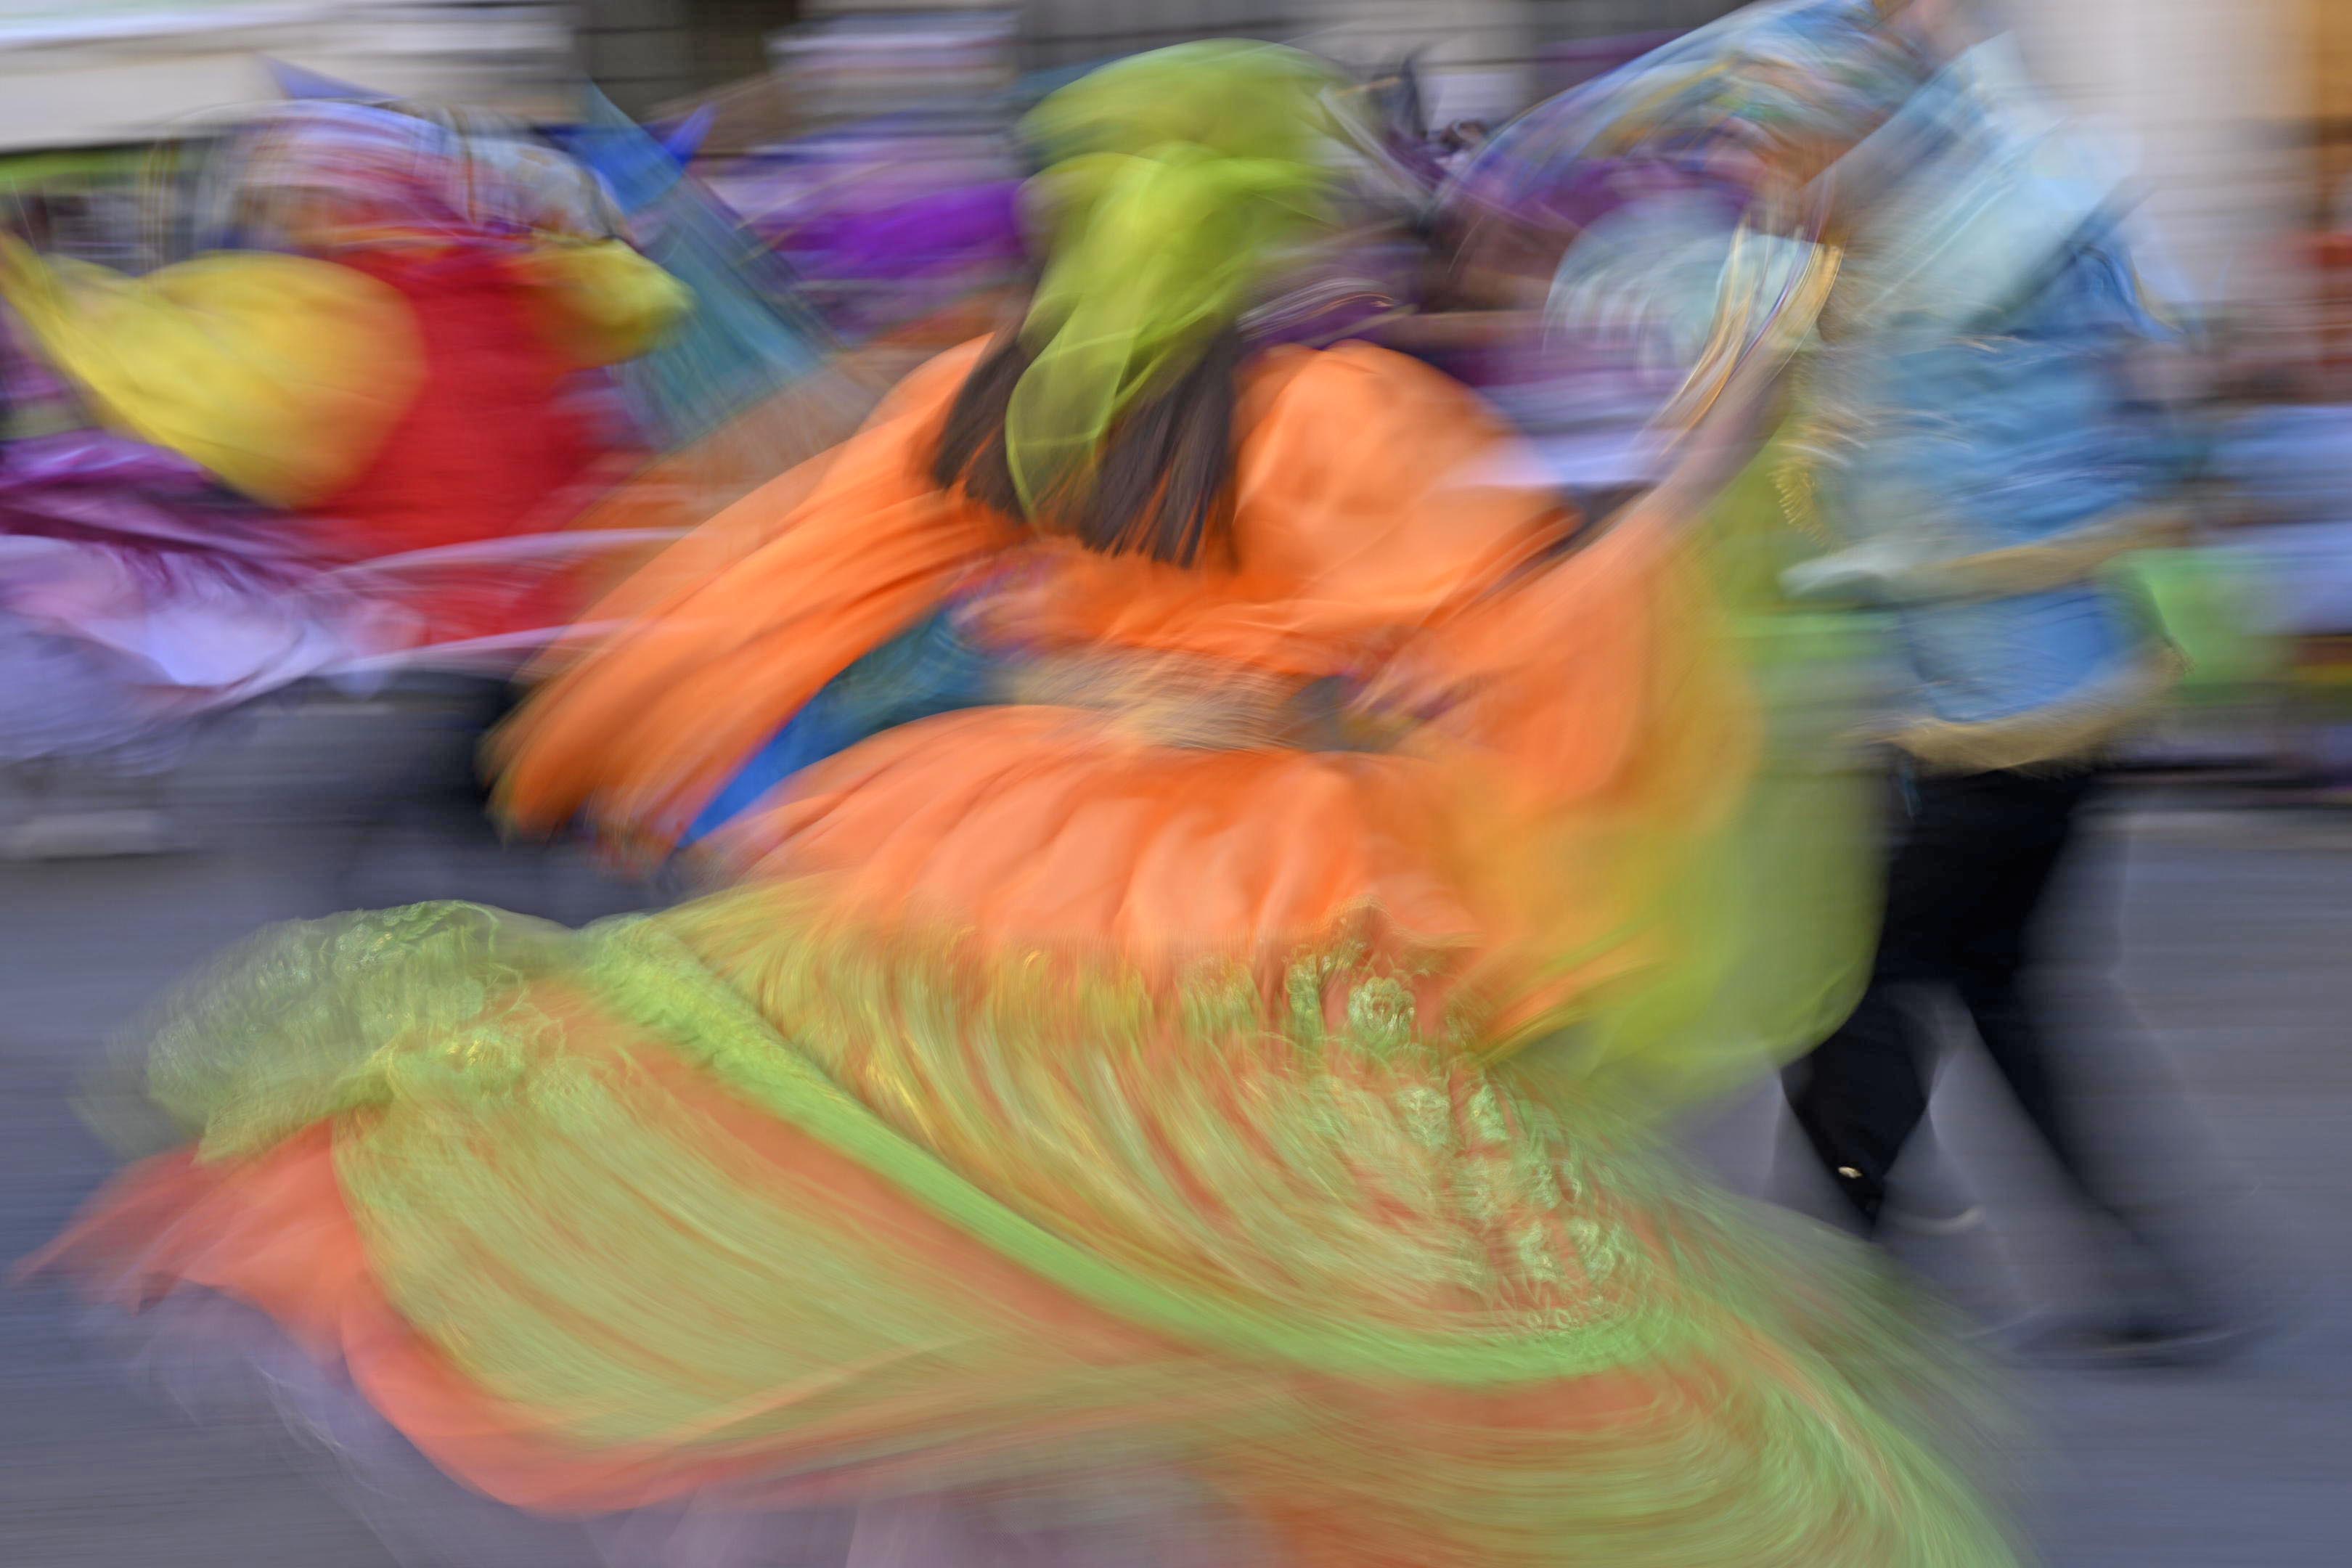 Los colores y magia de la gran fiesta de “La Tirana” vuelven a maravillar el norte de Chile